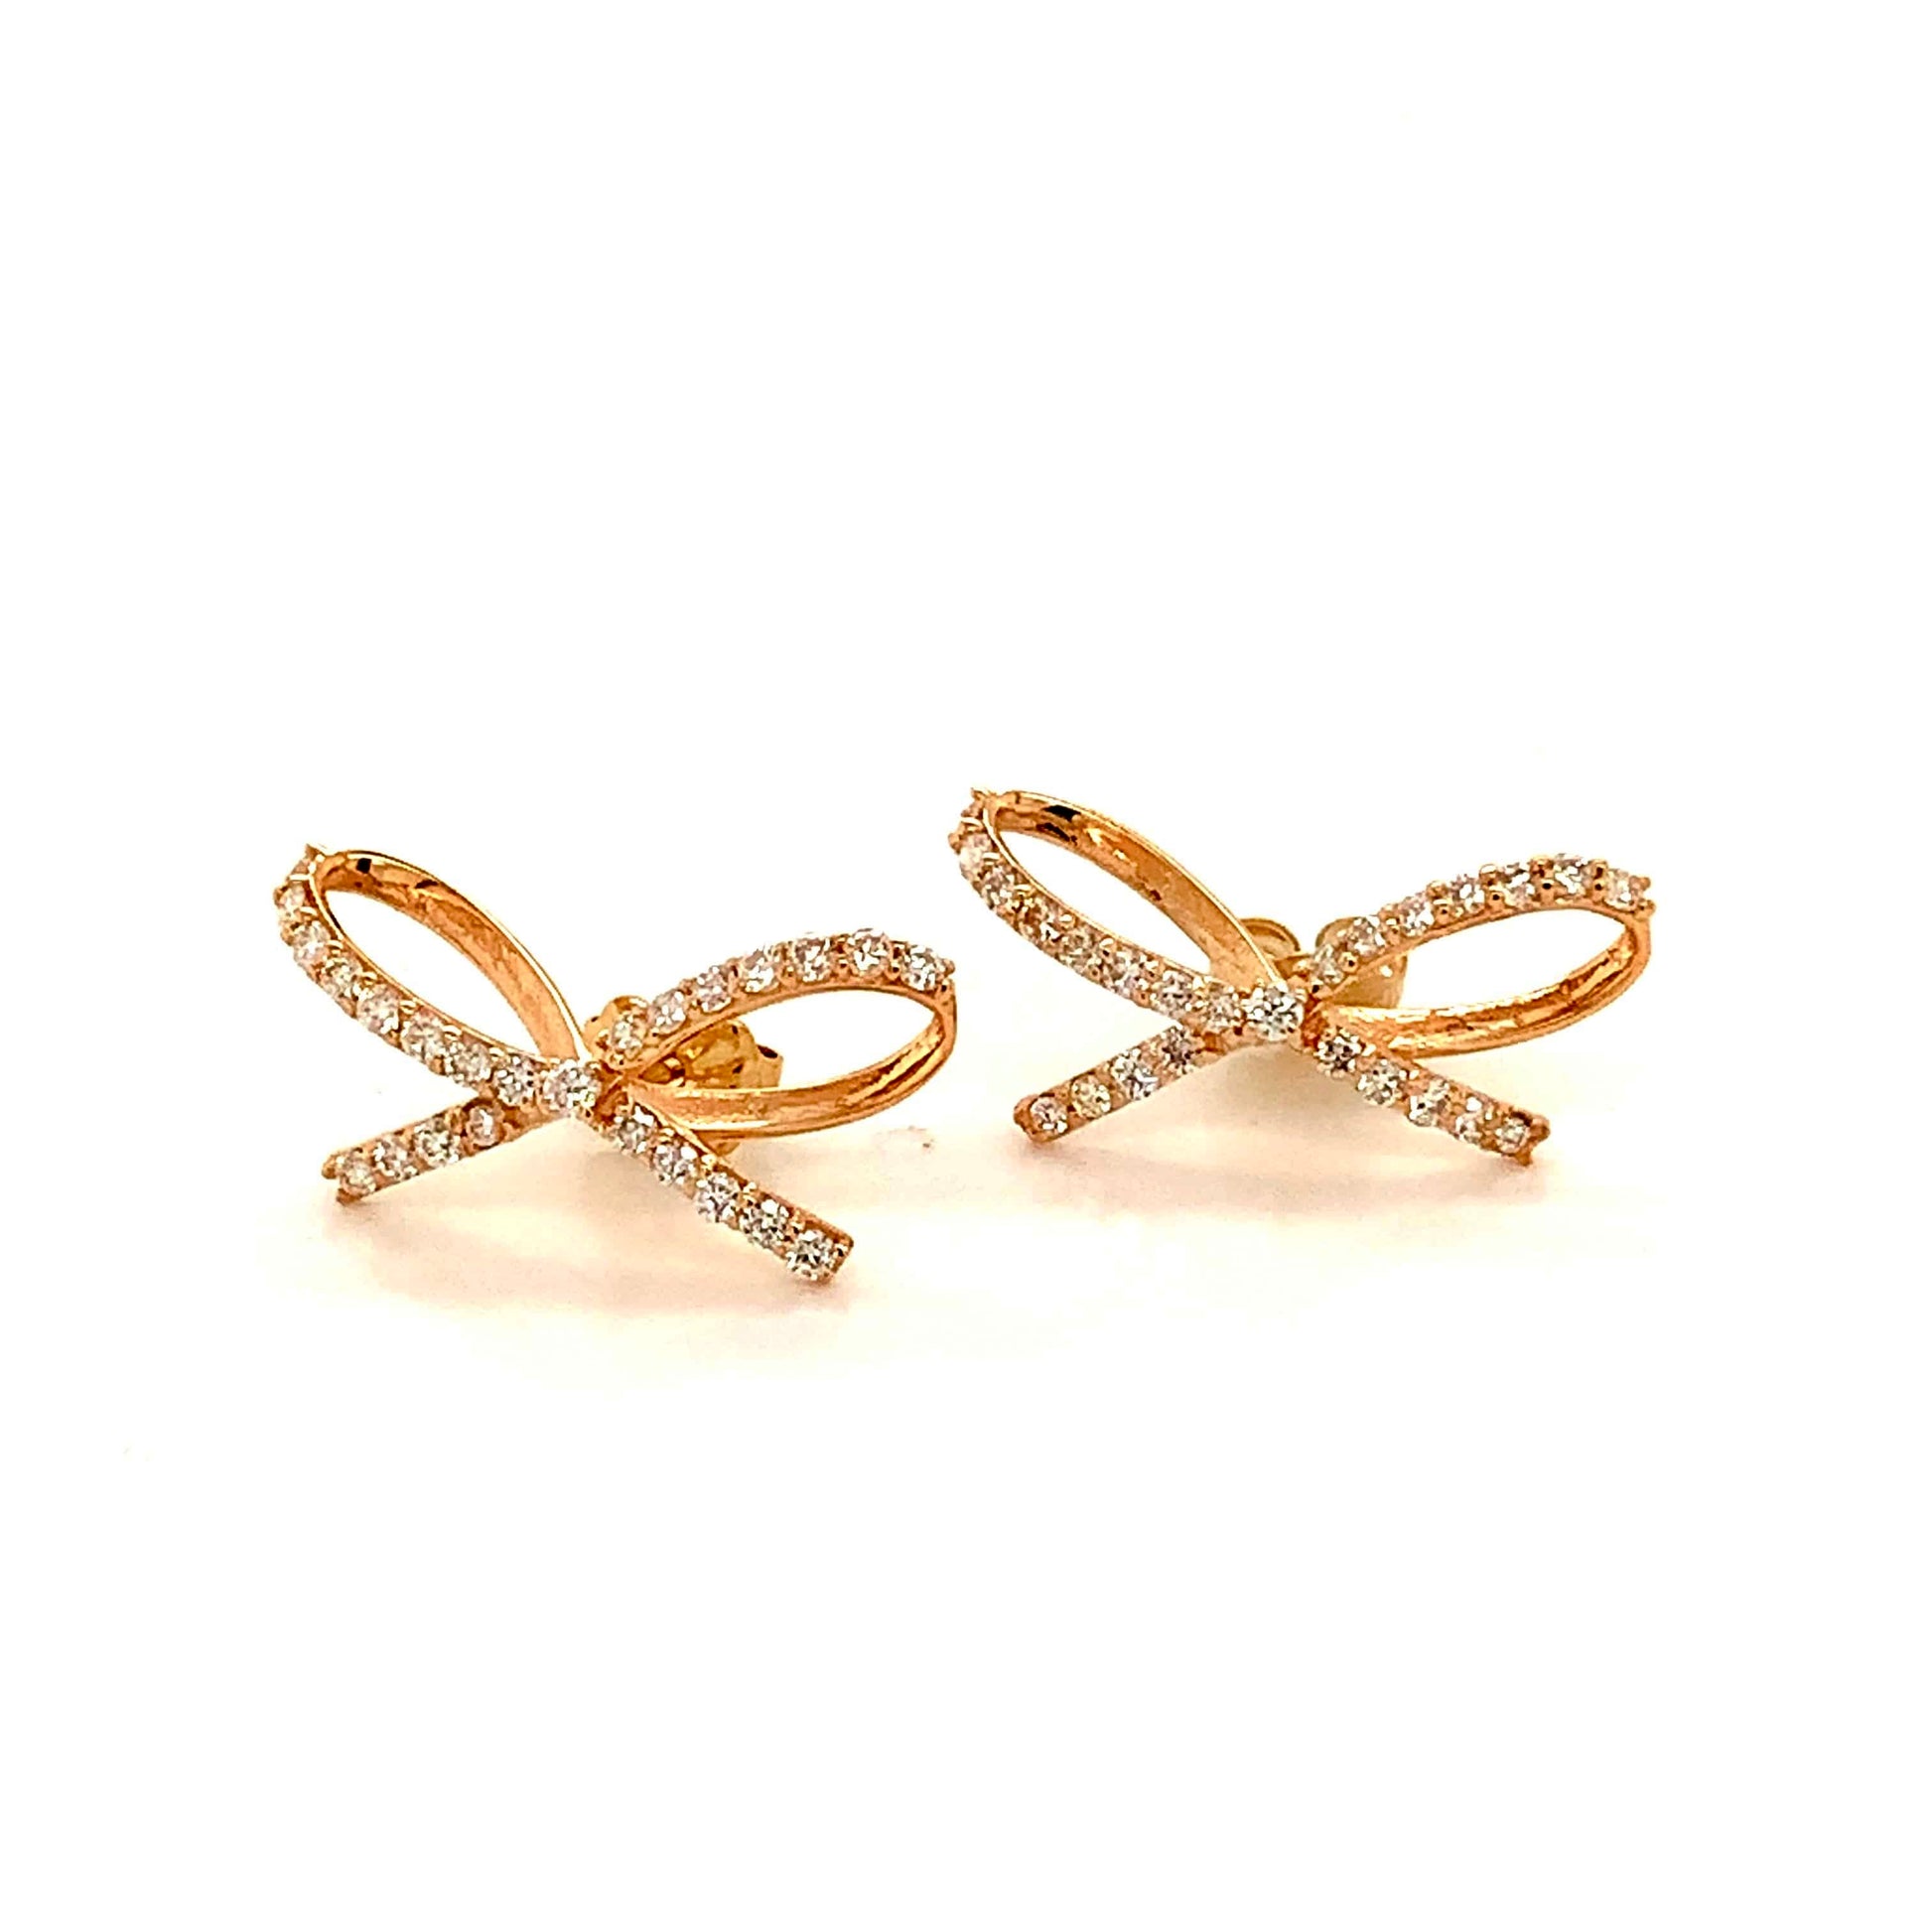 Diamond Bow Stud Earrings 14k Gold 0.5 TCW Certified $3,950 111897 - Certified Fine Jewelry